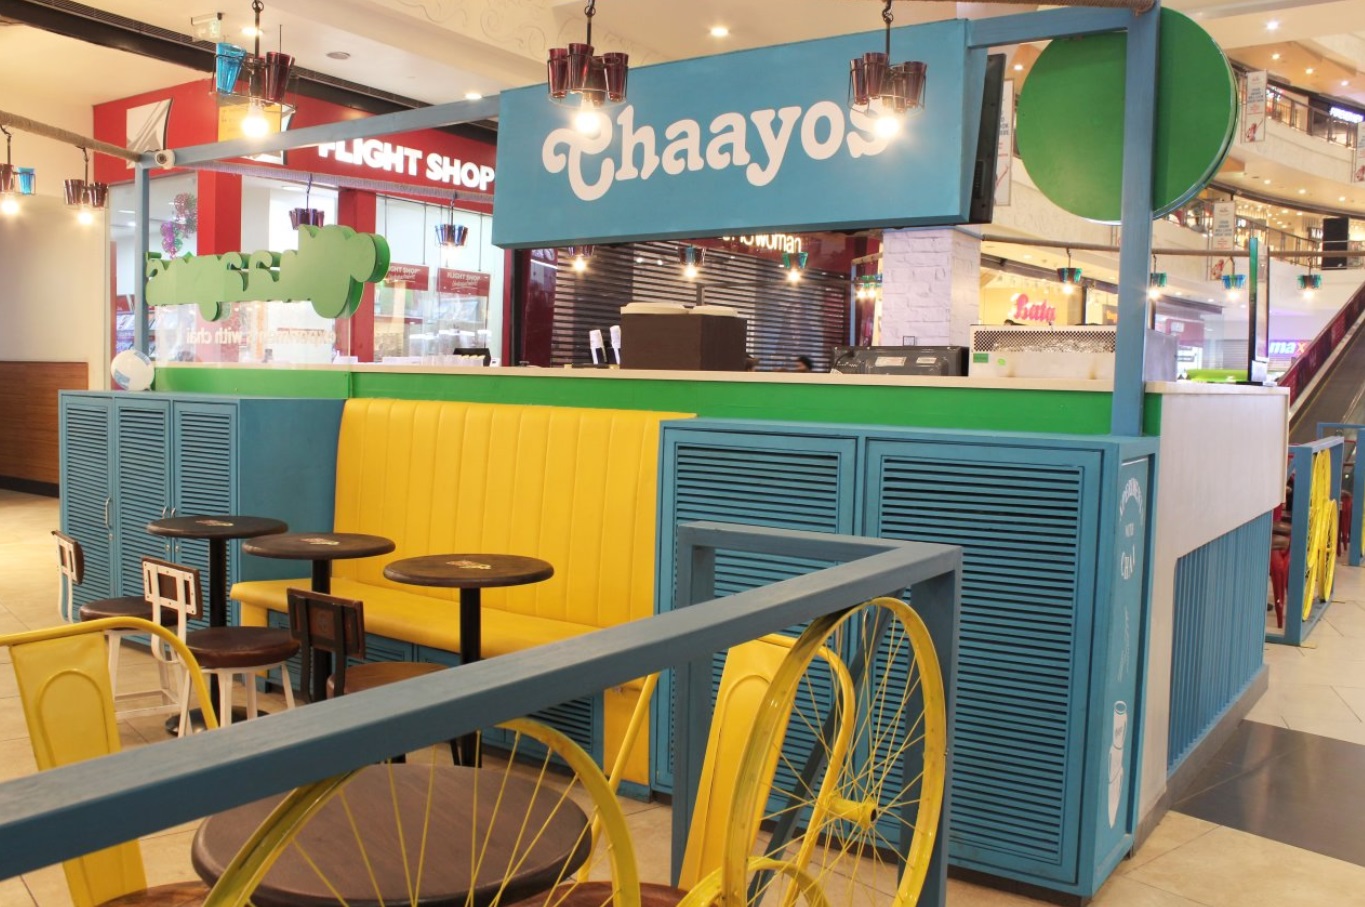 Chaayos Cafe - Pacific Mall, Tagore Garden, Tilak Nagar